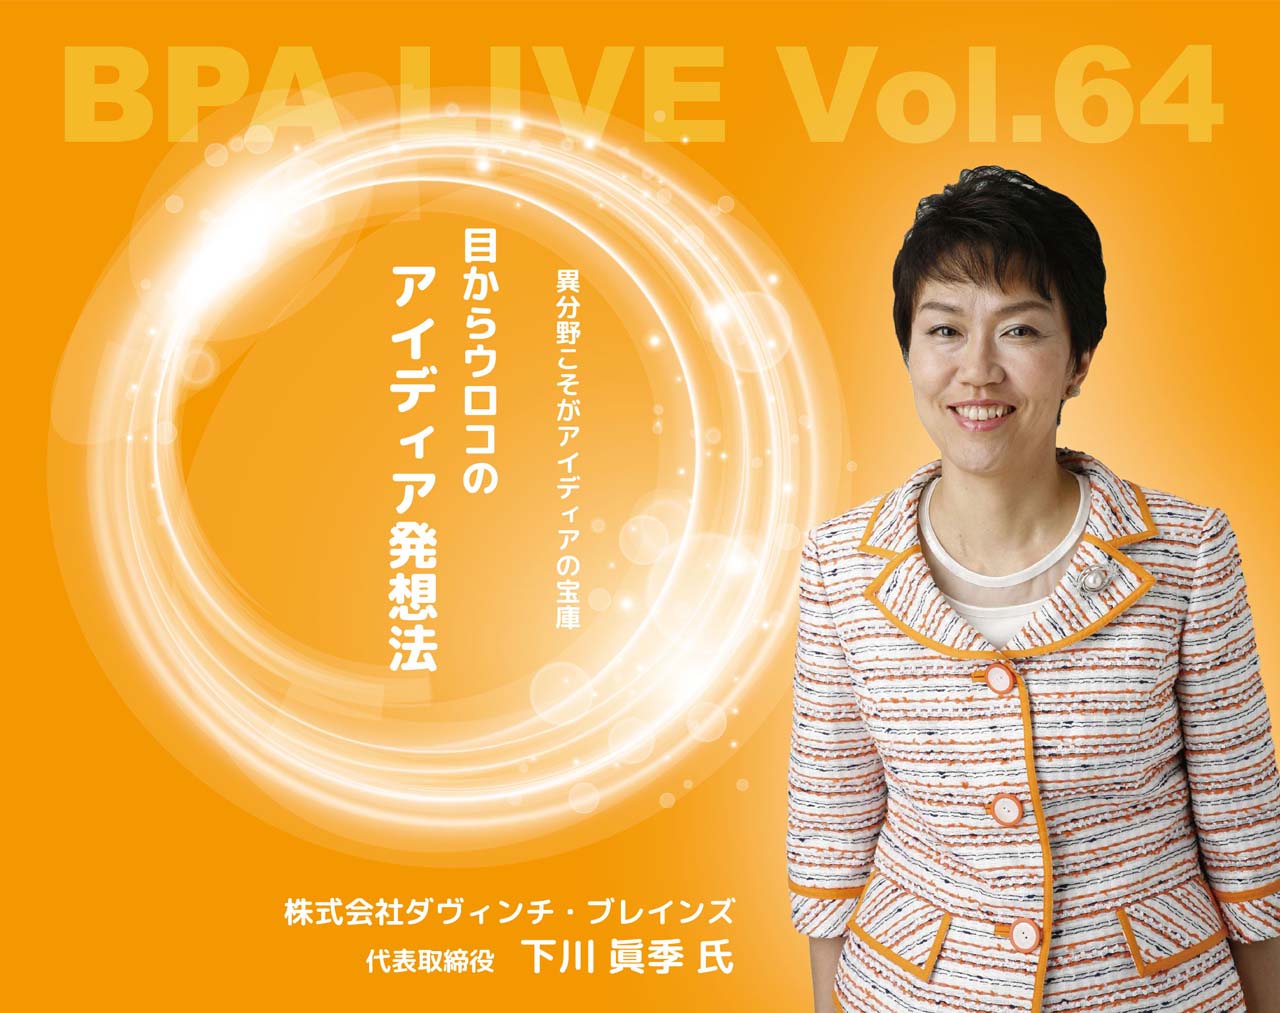 【7月13日(木)開催】BPA LIVE Vol.64 – 目からウロコのアイディア発想法